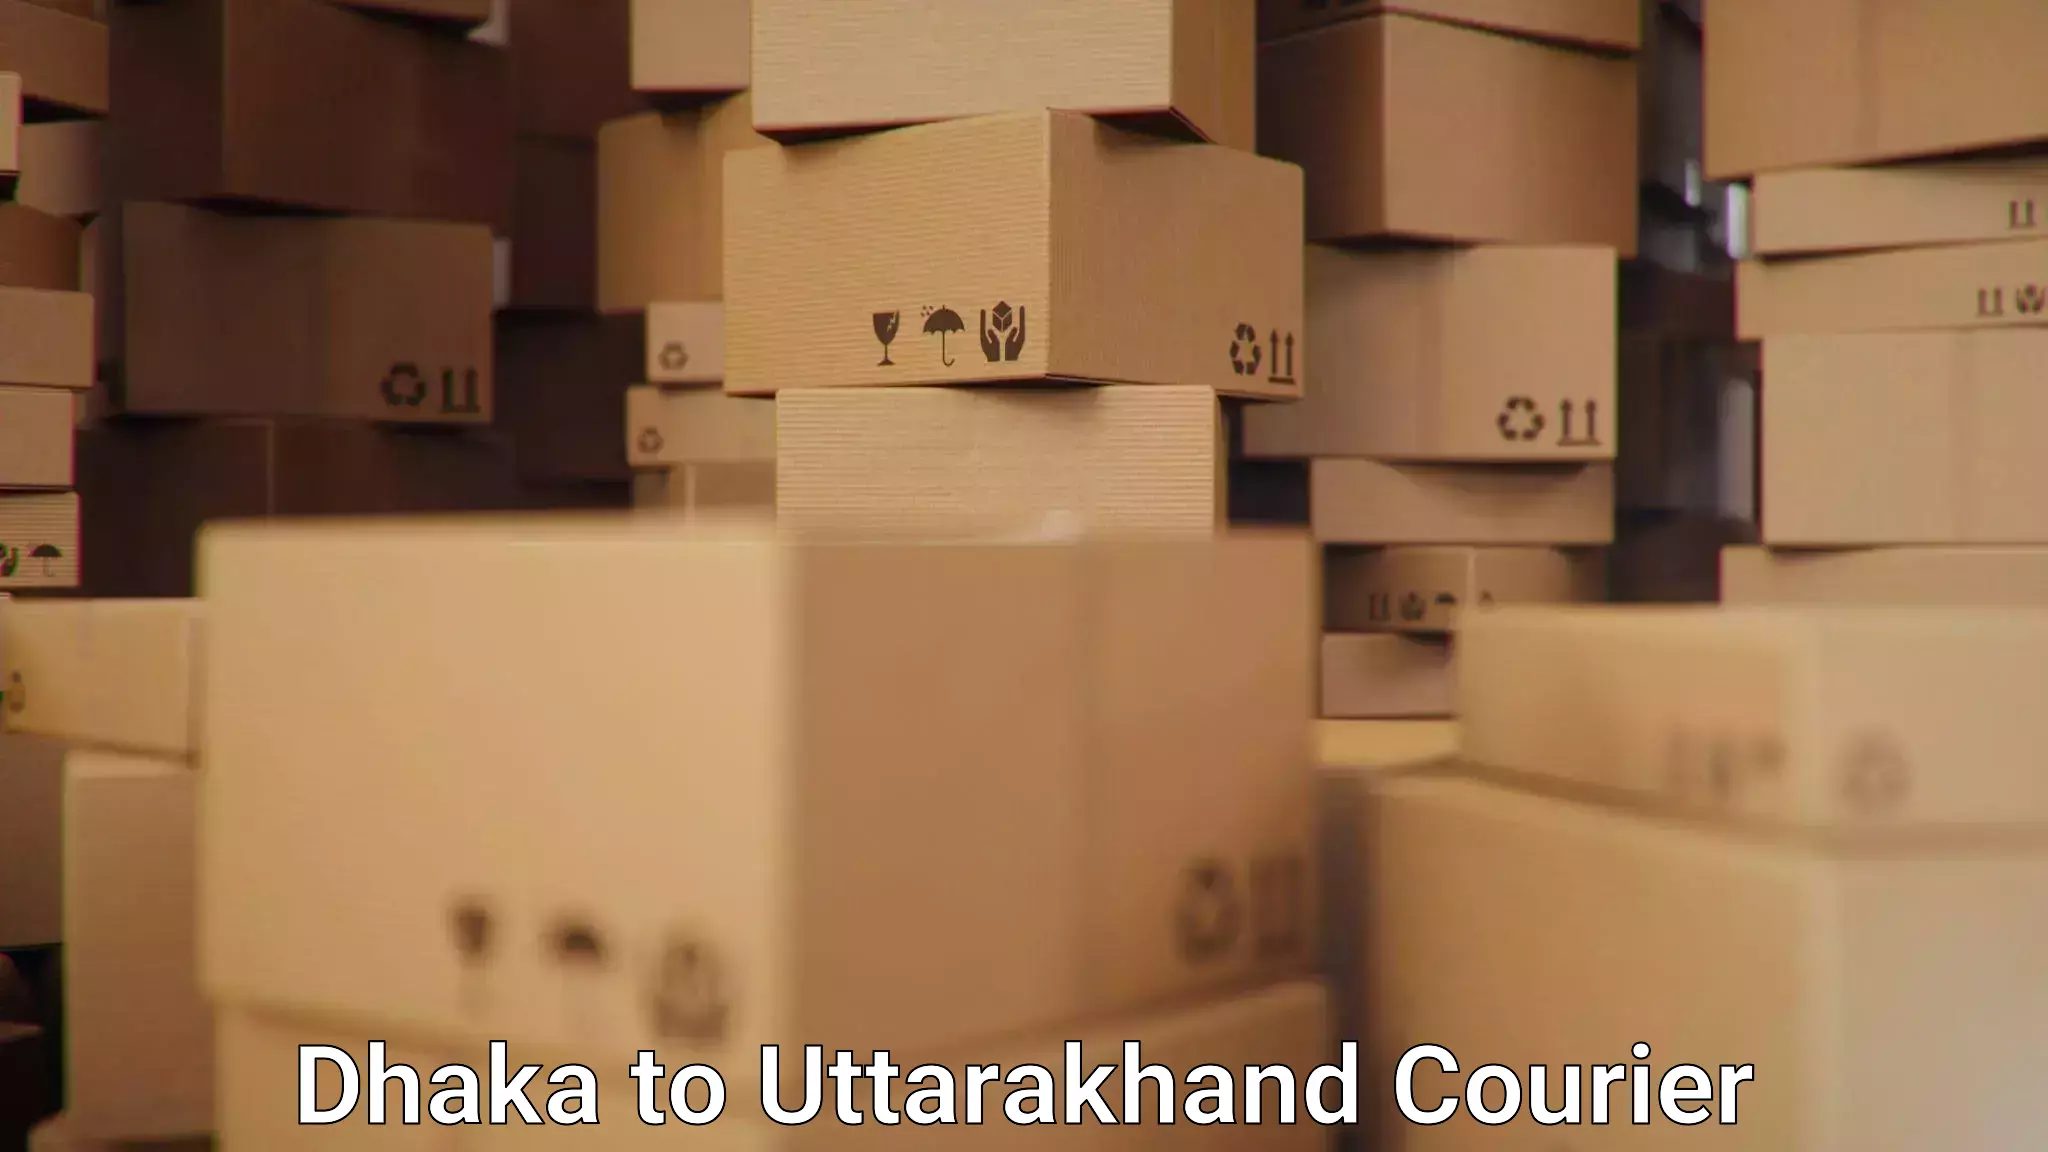 Express mail service Dhaka to Uttarakhand